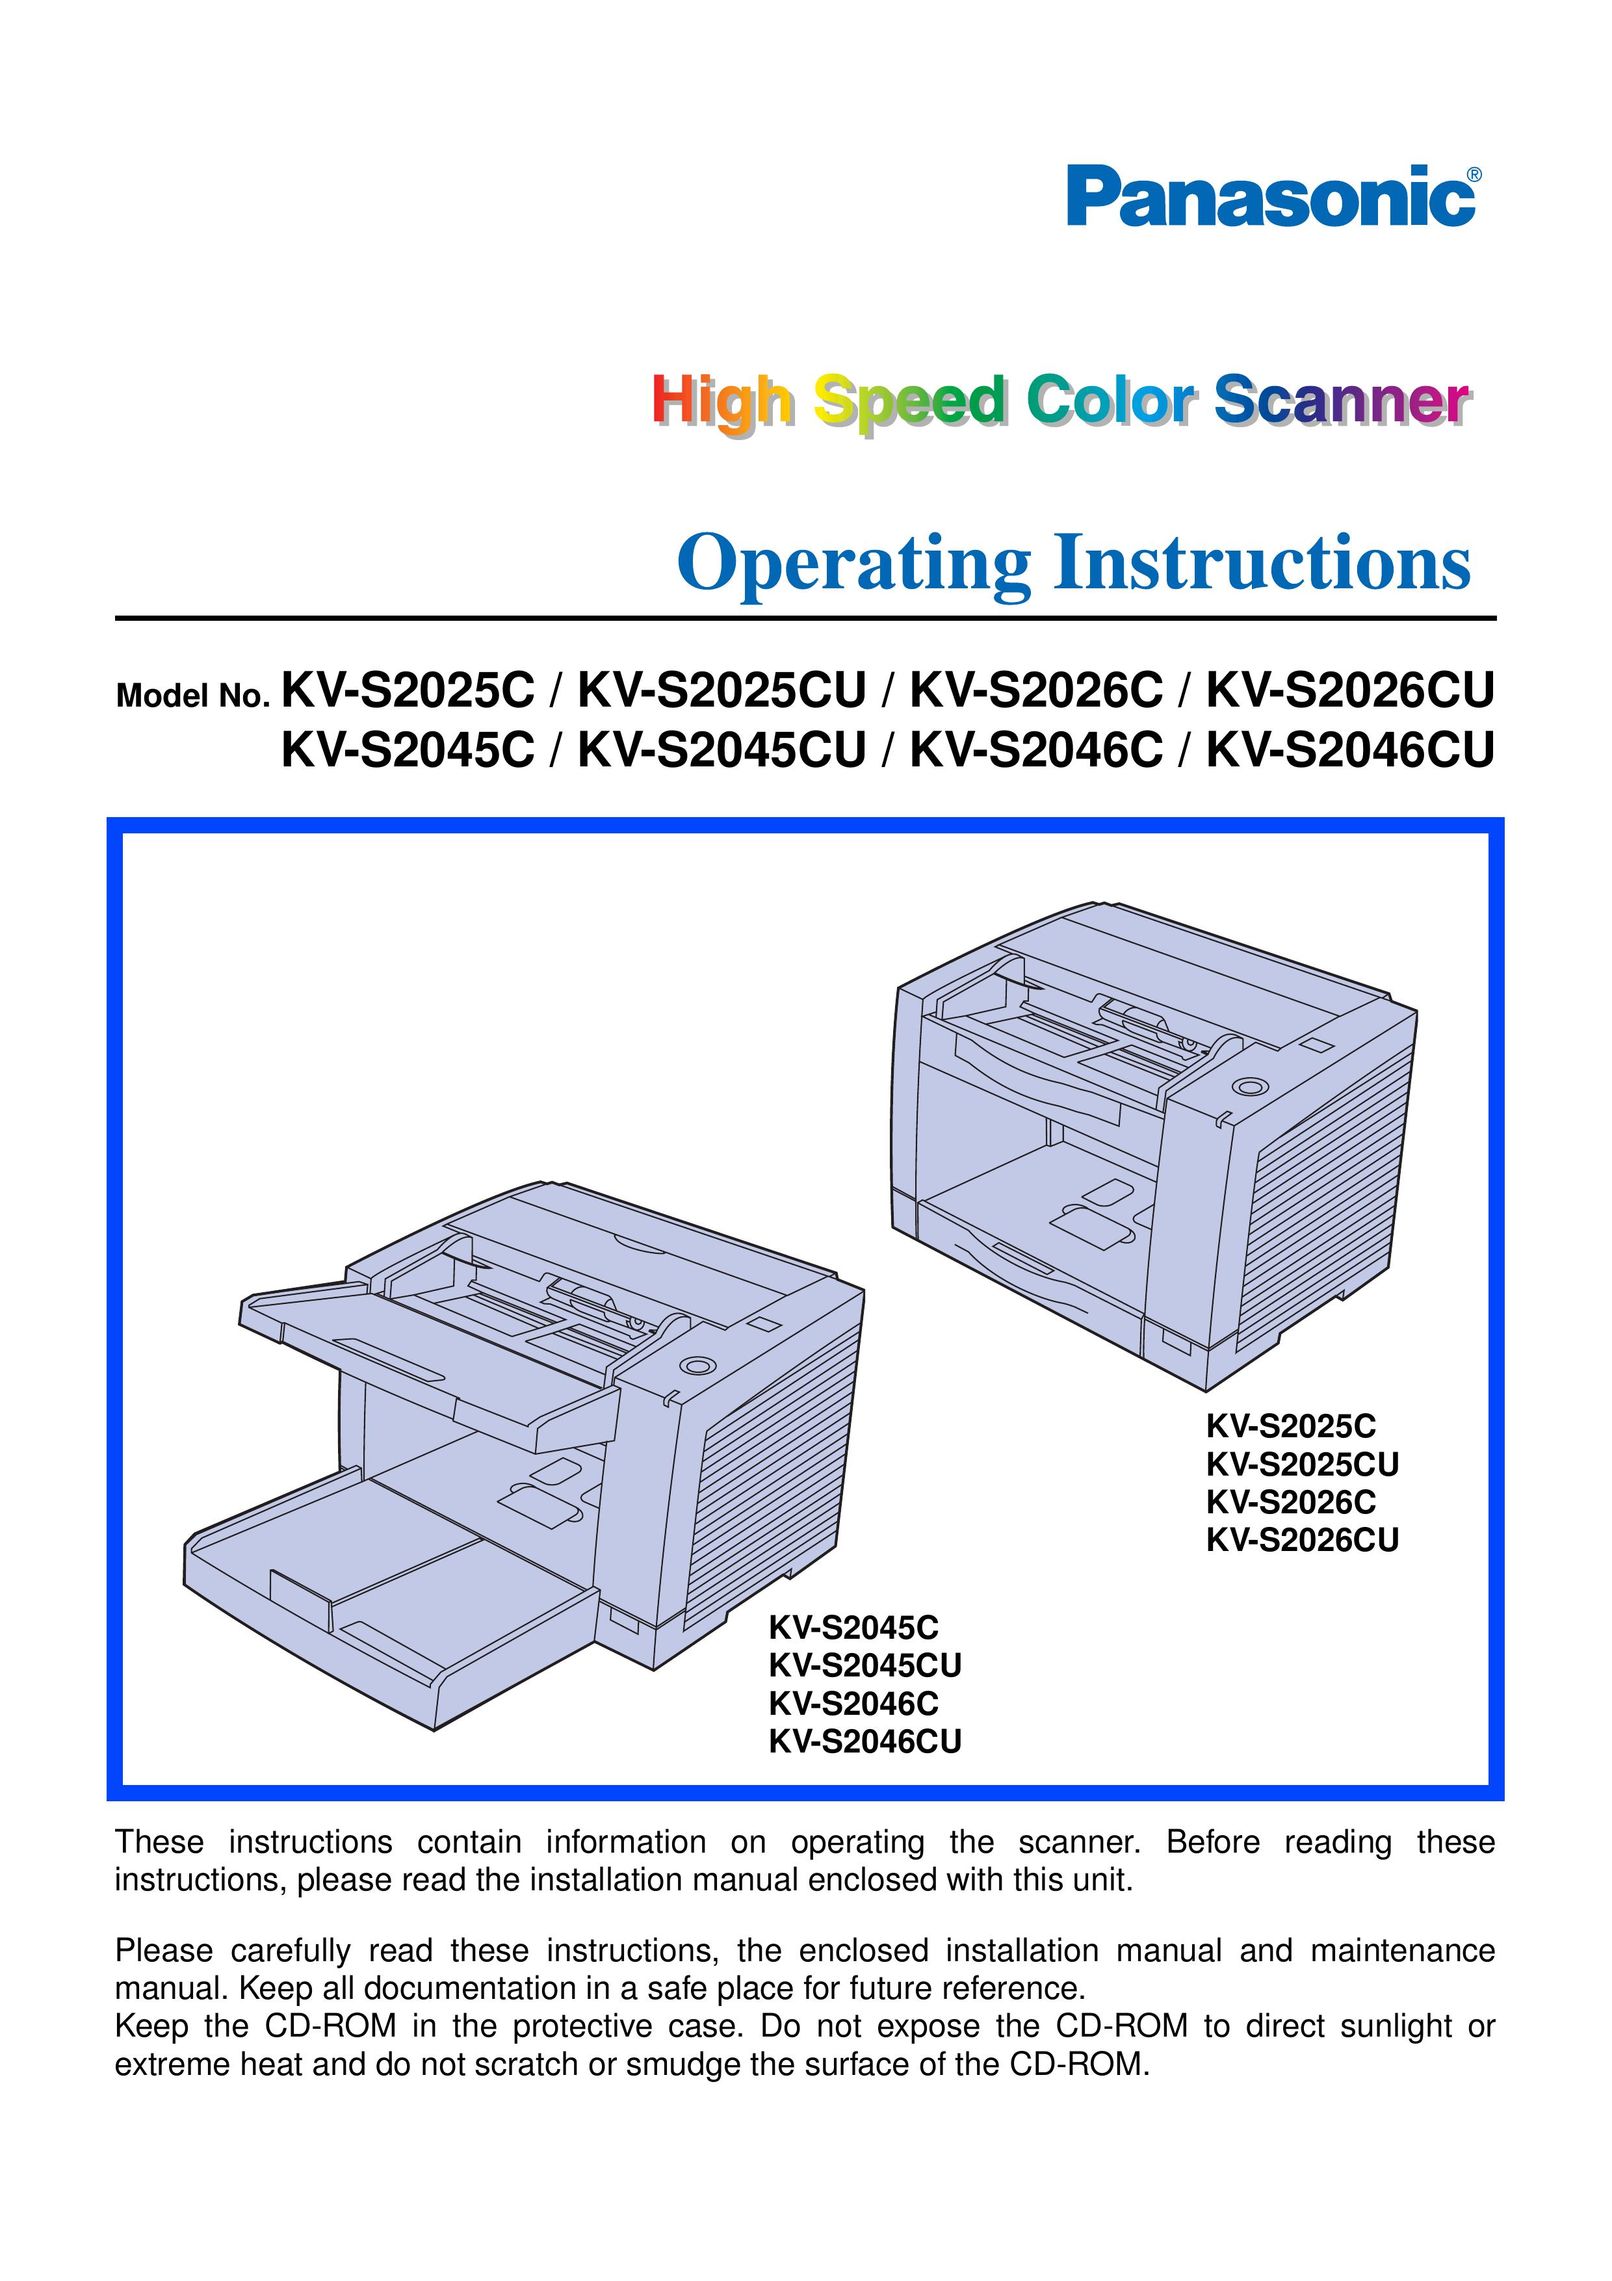 Panasonic KV-S2046CU Scanner User Manual